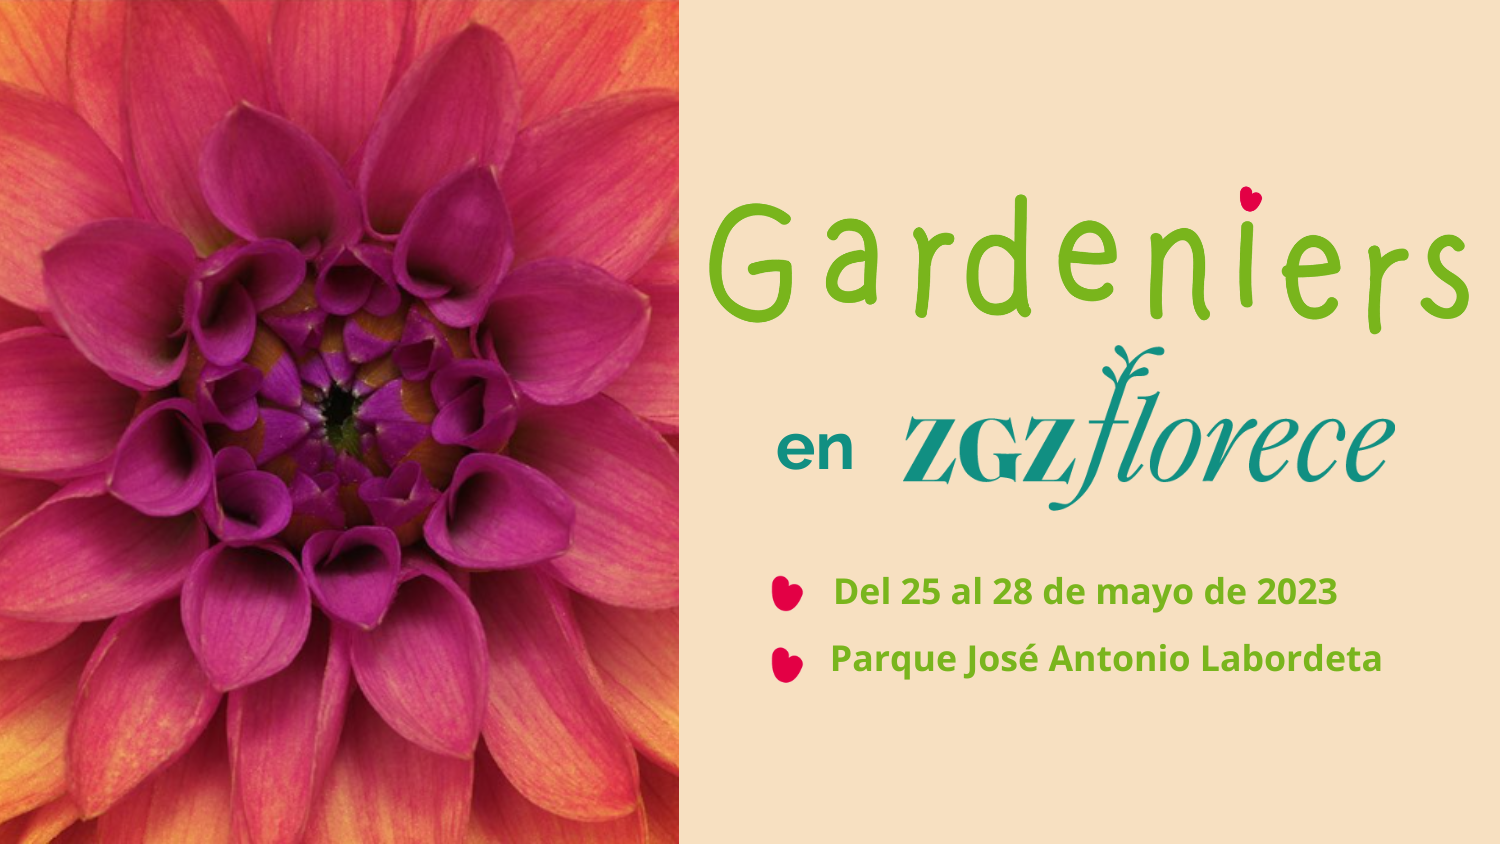 Gardeniers en Zaragoza Florece